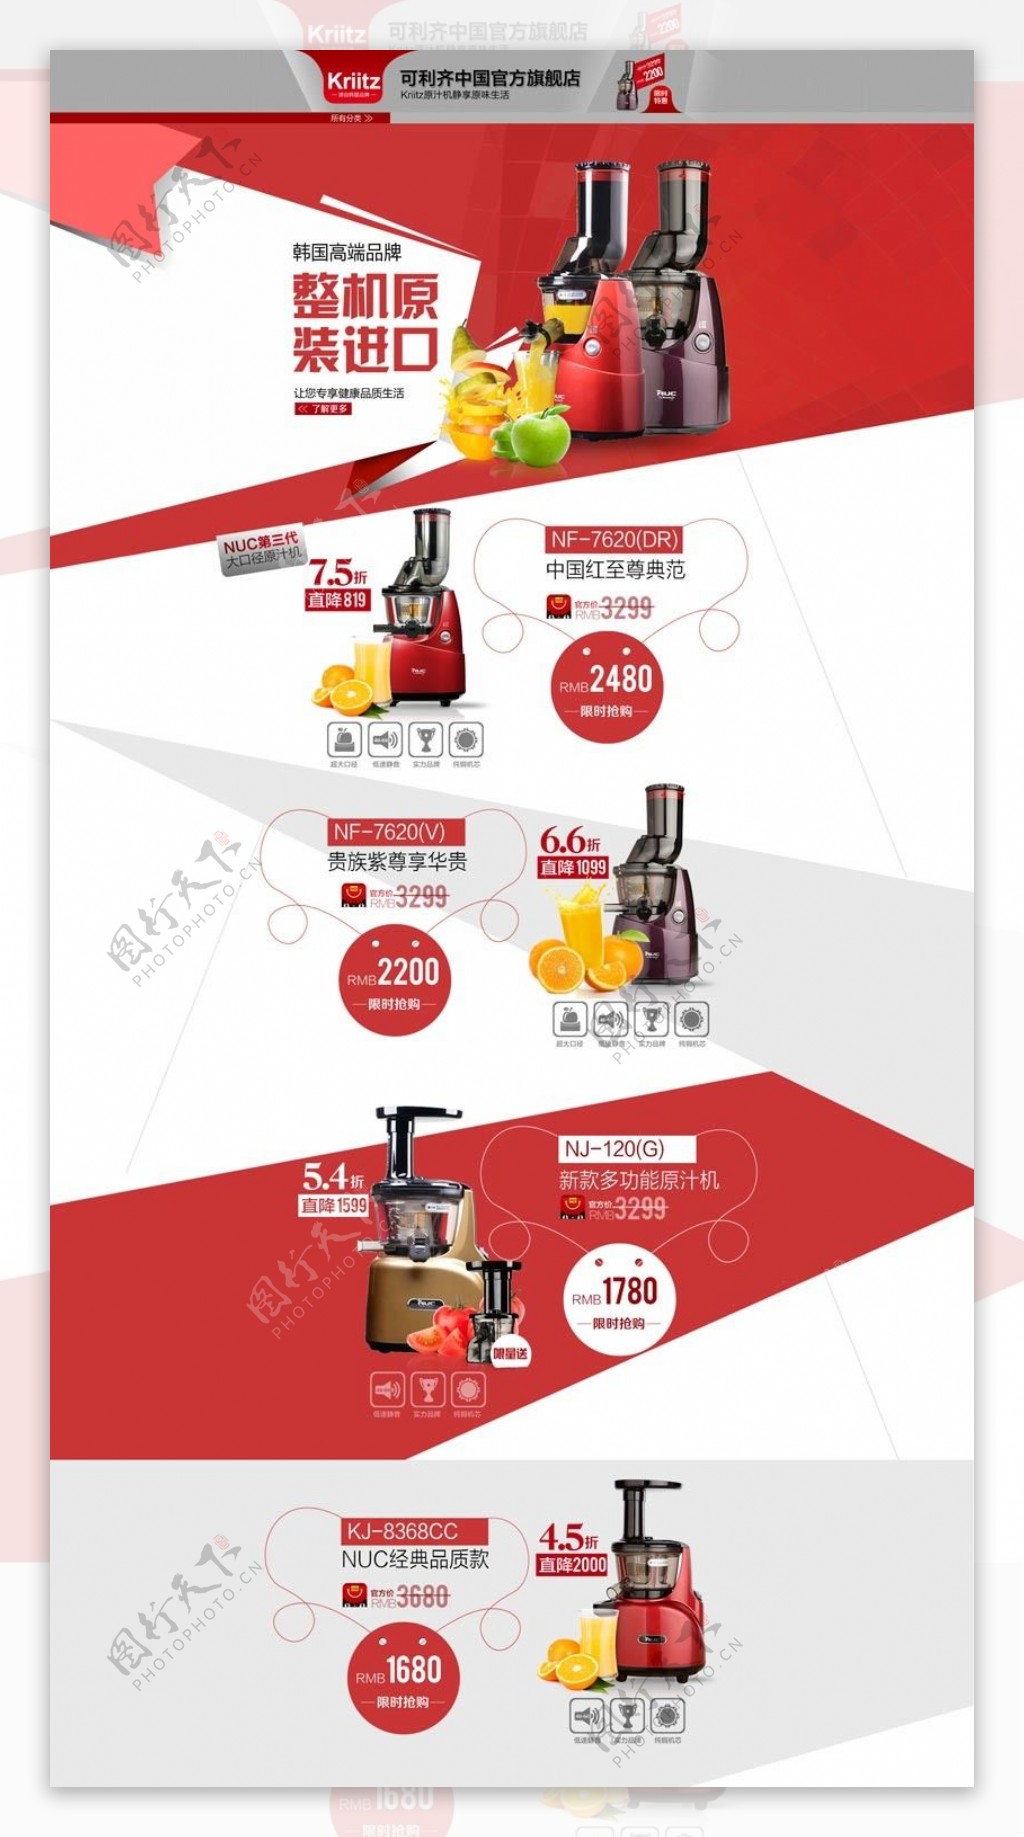 淘宝果汁机原汁机促销页面设计PSD素材